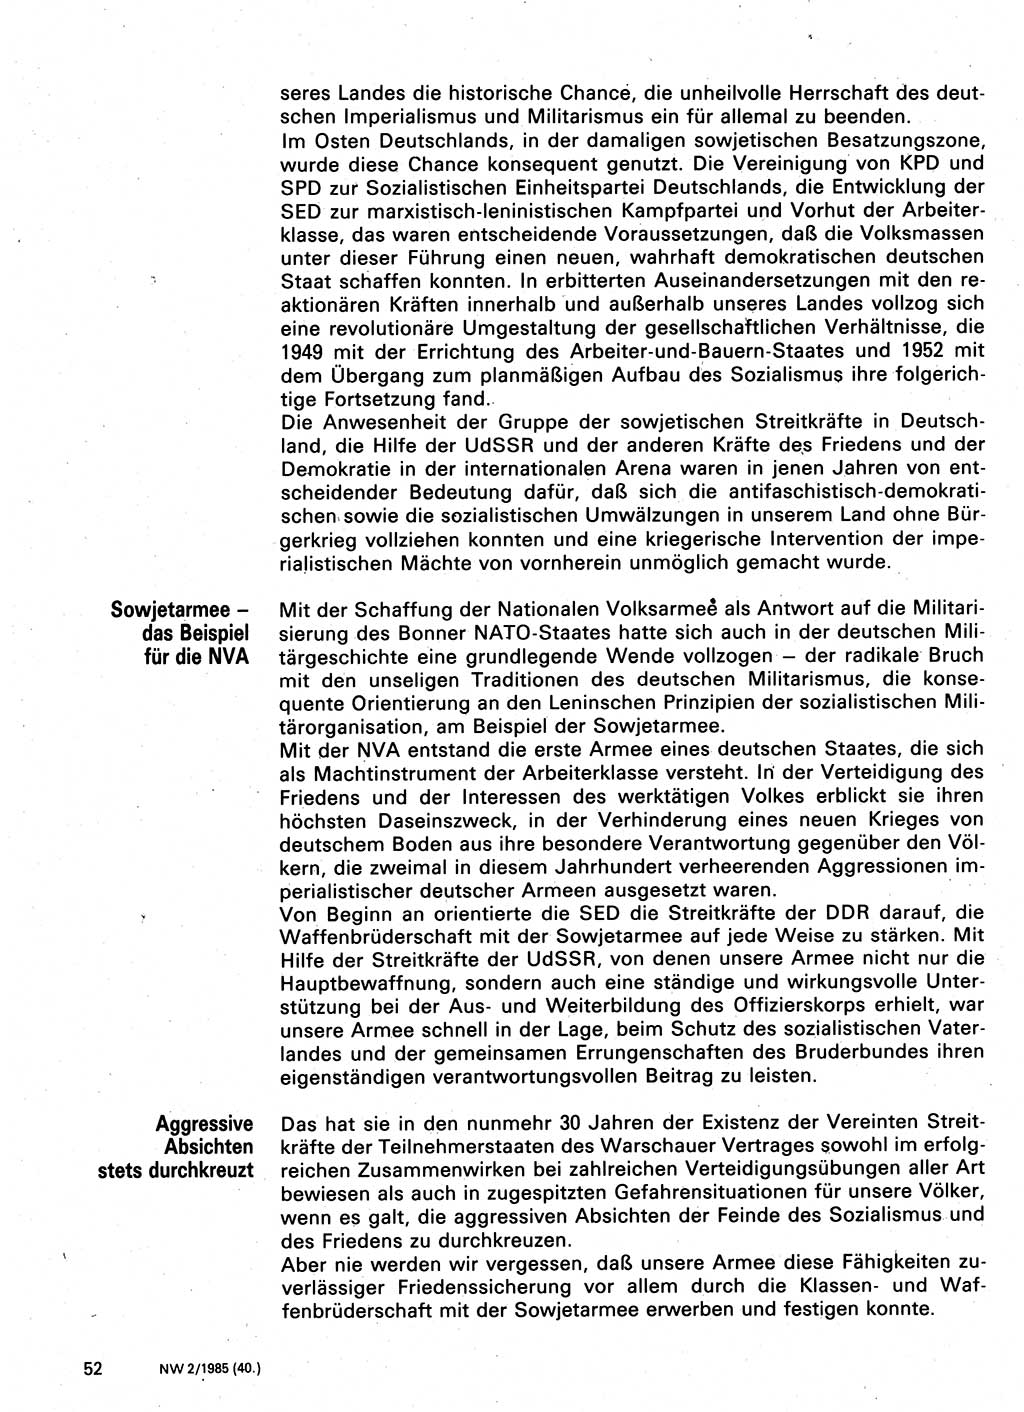 Neuer Weg (NW), Organ des Zentralkomitees (ZK) der SED (Sozialistische Einheitspartei Deutschlands) für Fragen des Parteilebens, 40. Jahrgang [Deutsche Demokratische Republik (DDR)] 1985, Seite 52 (NW ZK SED DDR 1985, S. 52)